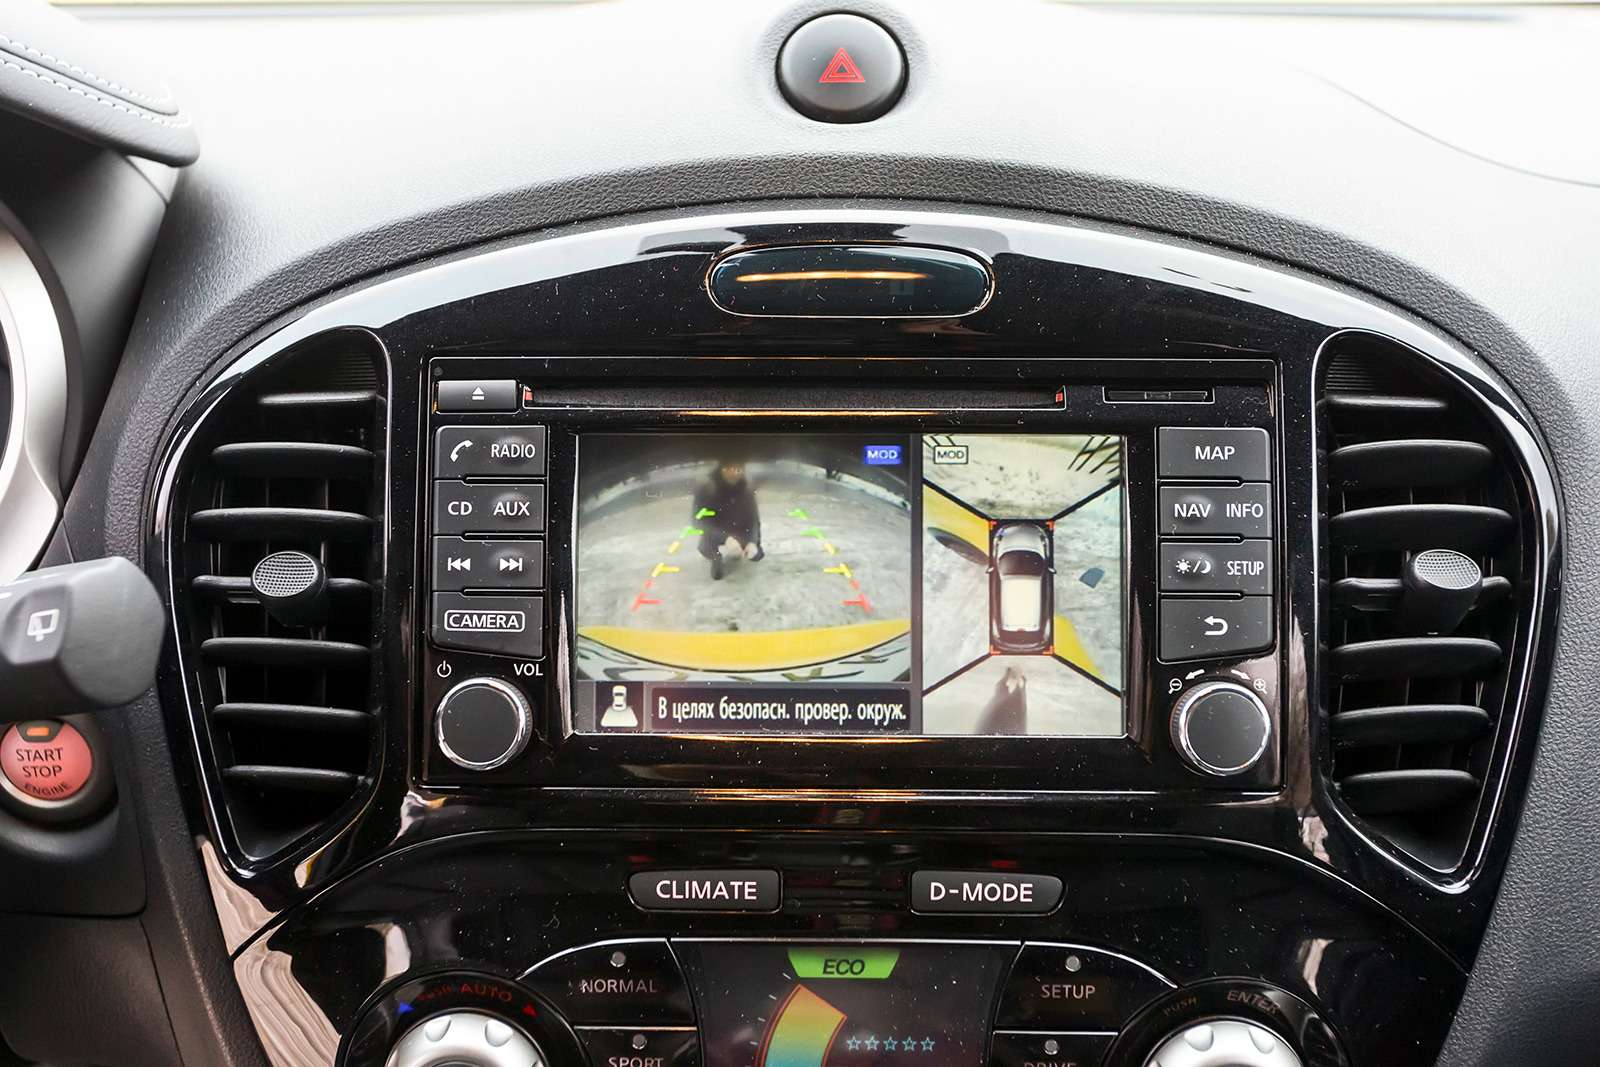 В салоне главное новшество - 5,8-дюймовый дисплей мультимедийной системы Nissan Connect, которая дополнена навигатором последнего поколения, к ней же подключается смартфон. А еще рестайлинговый Juke получил систему кругового обзора Arround View Monitor с динамической разметкой.